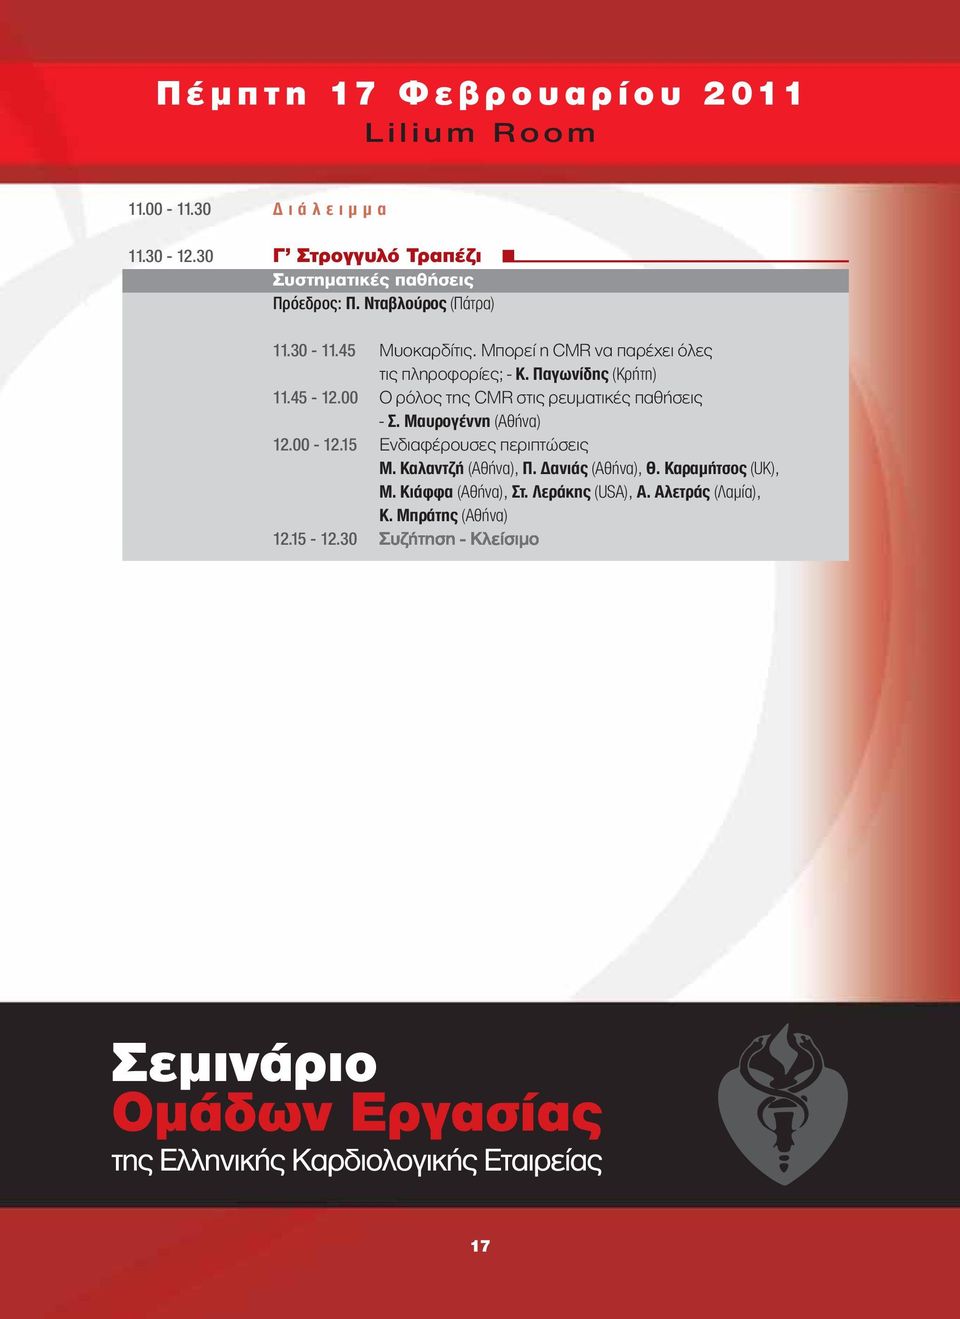 00 Ο ρόλος της CMR στις ρευματικές παθήσεις - Σ. Μαυρογέννη (Αθήνα) 12.00-12.15 Ενδιαφέρουσες περιπτώσεις Μ.